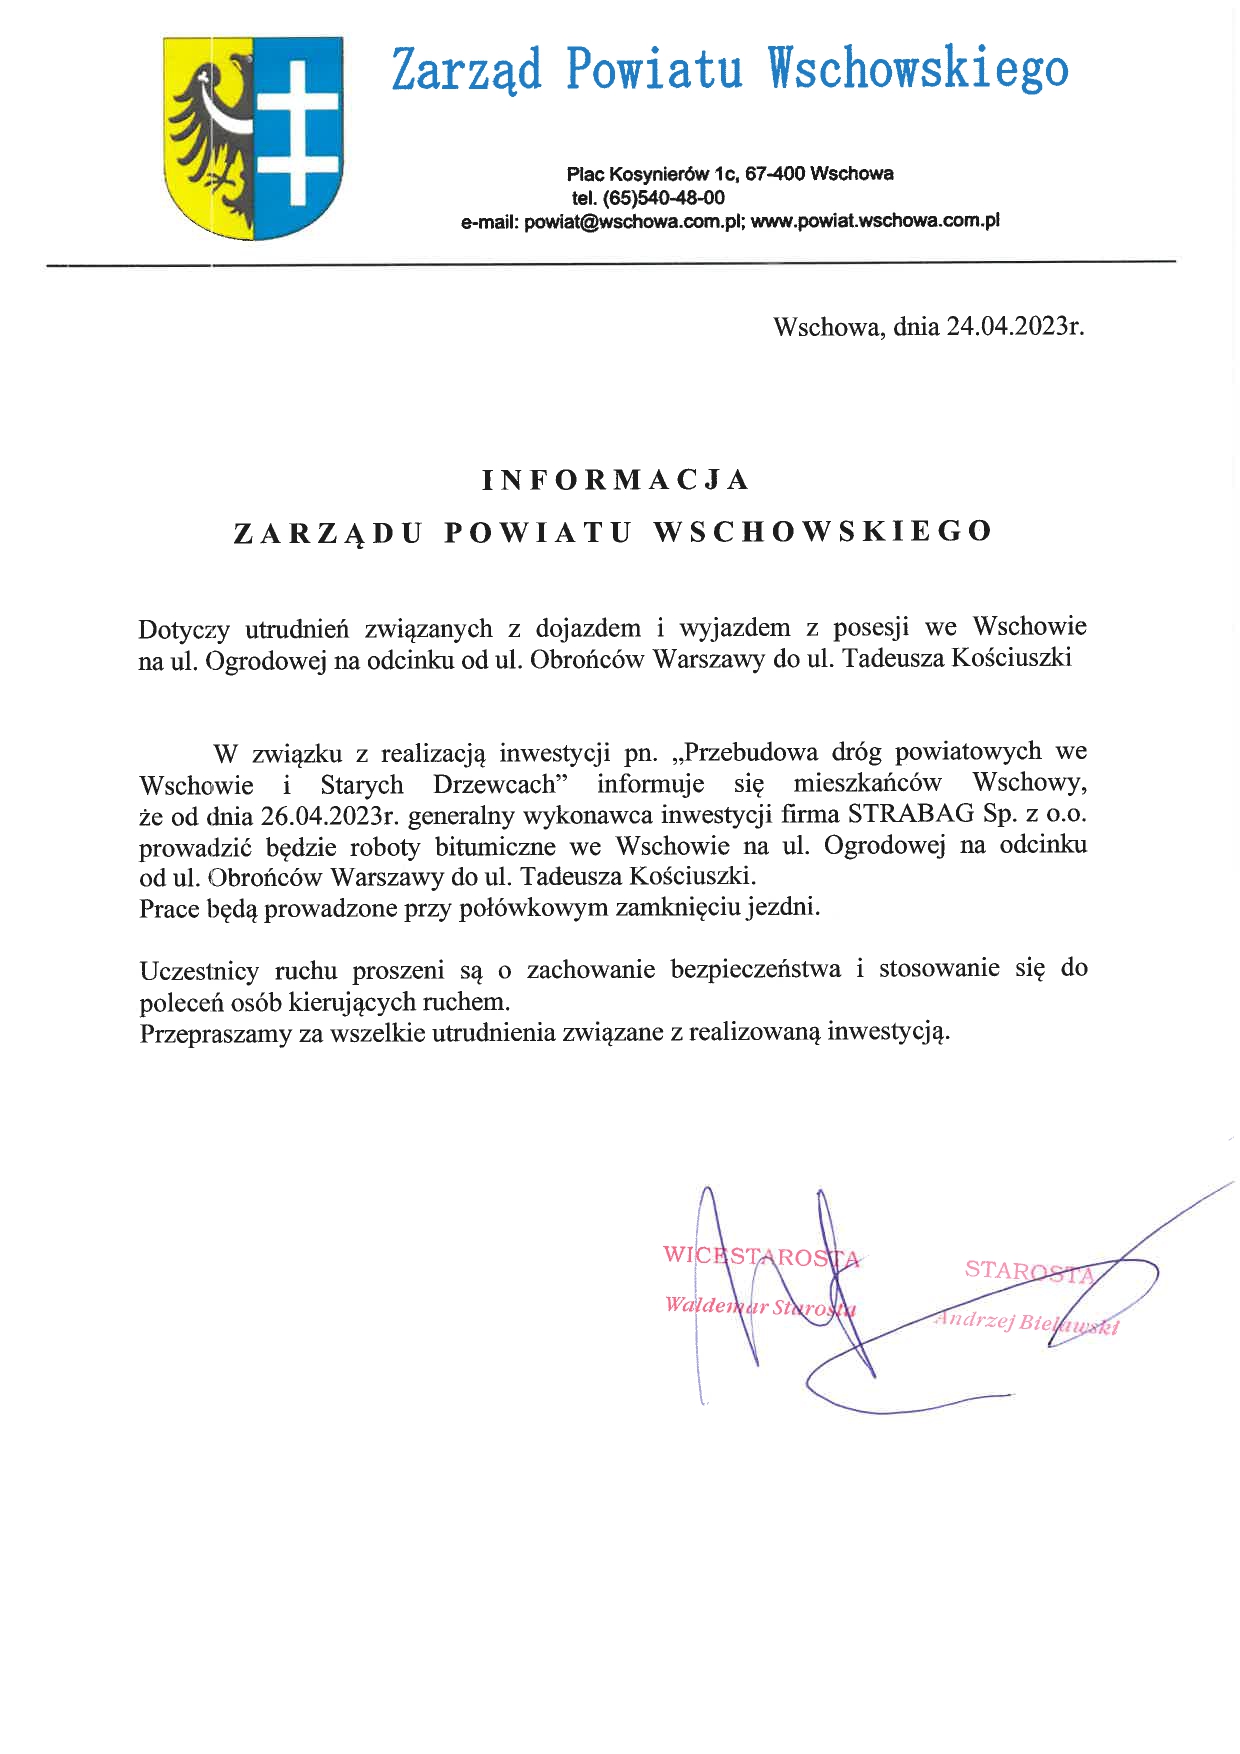 Informacja Zarządu Powiatu Wschowskiego